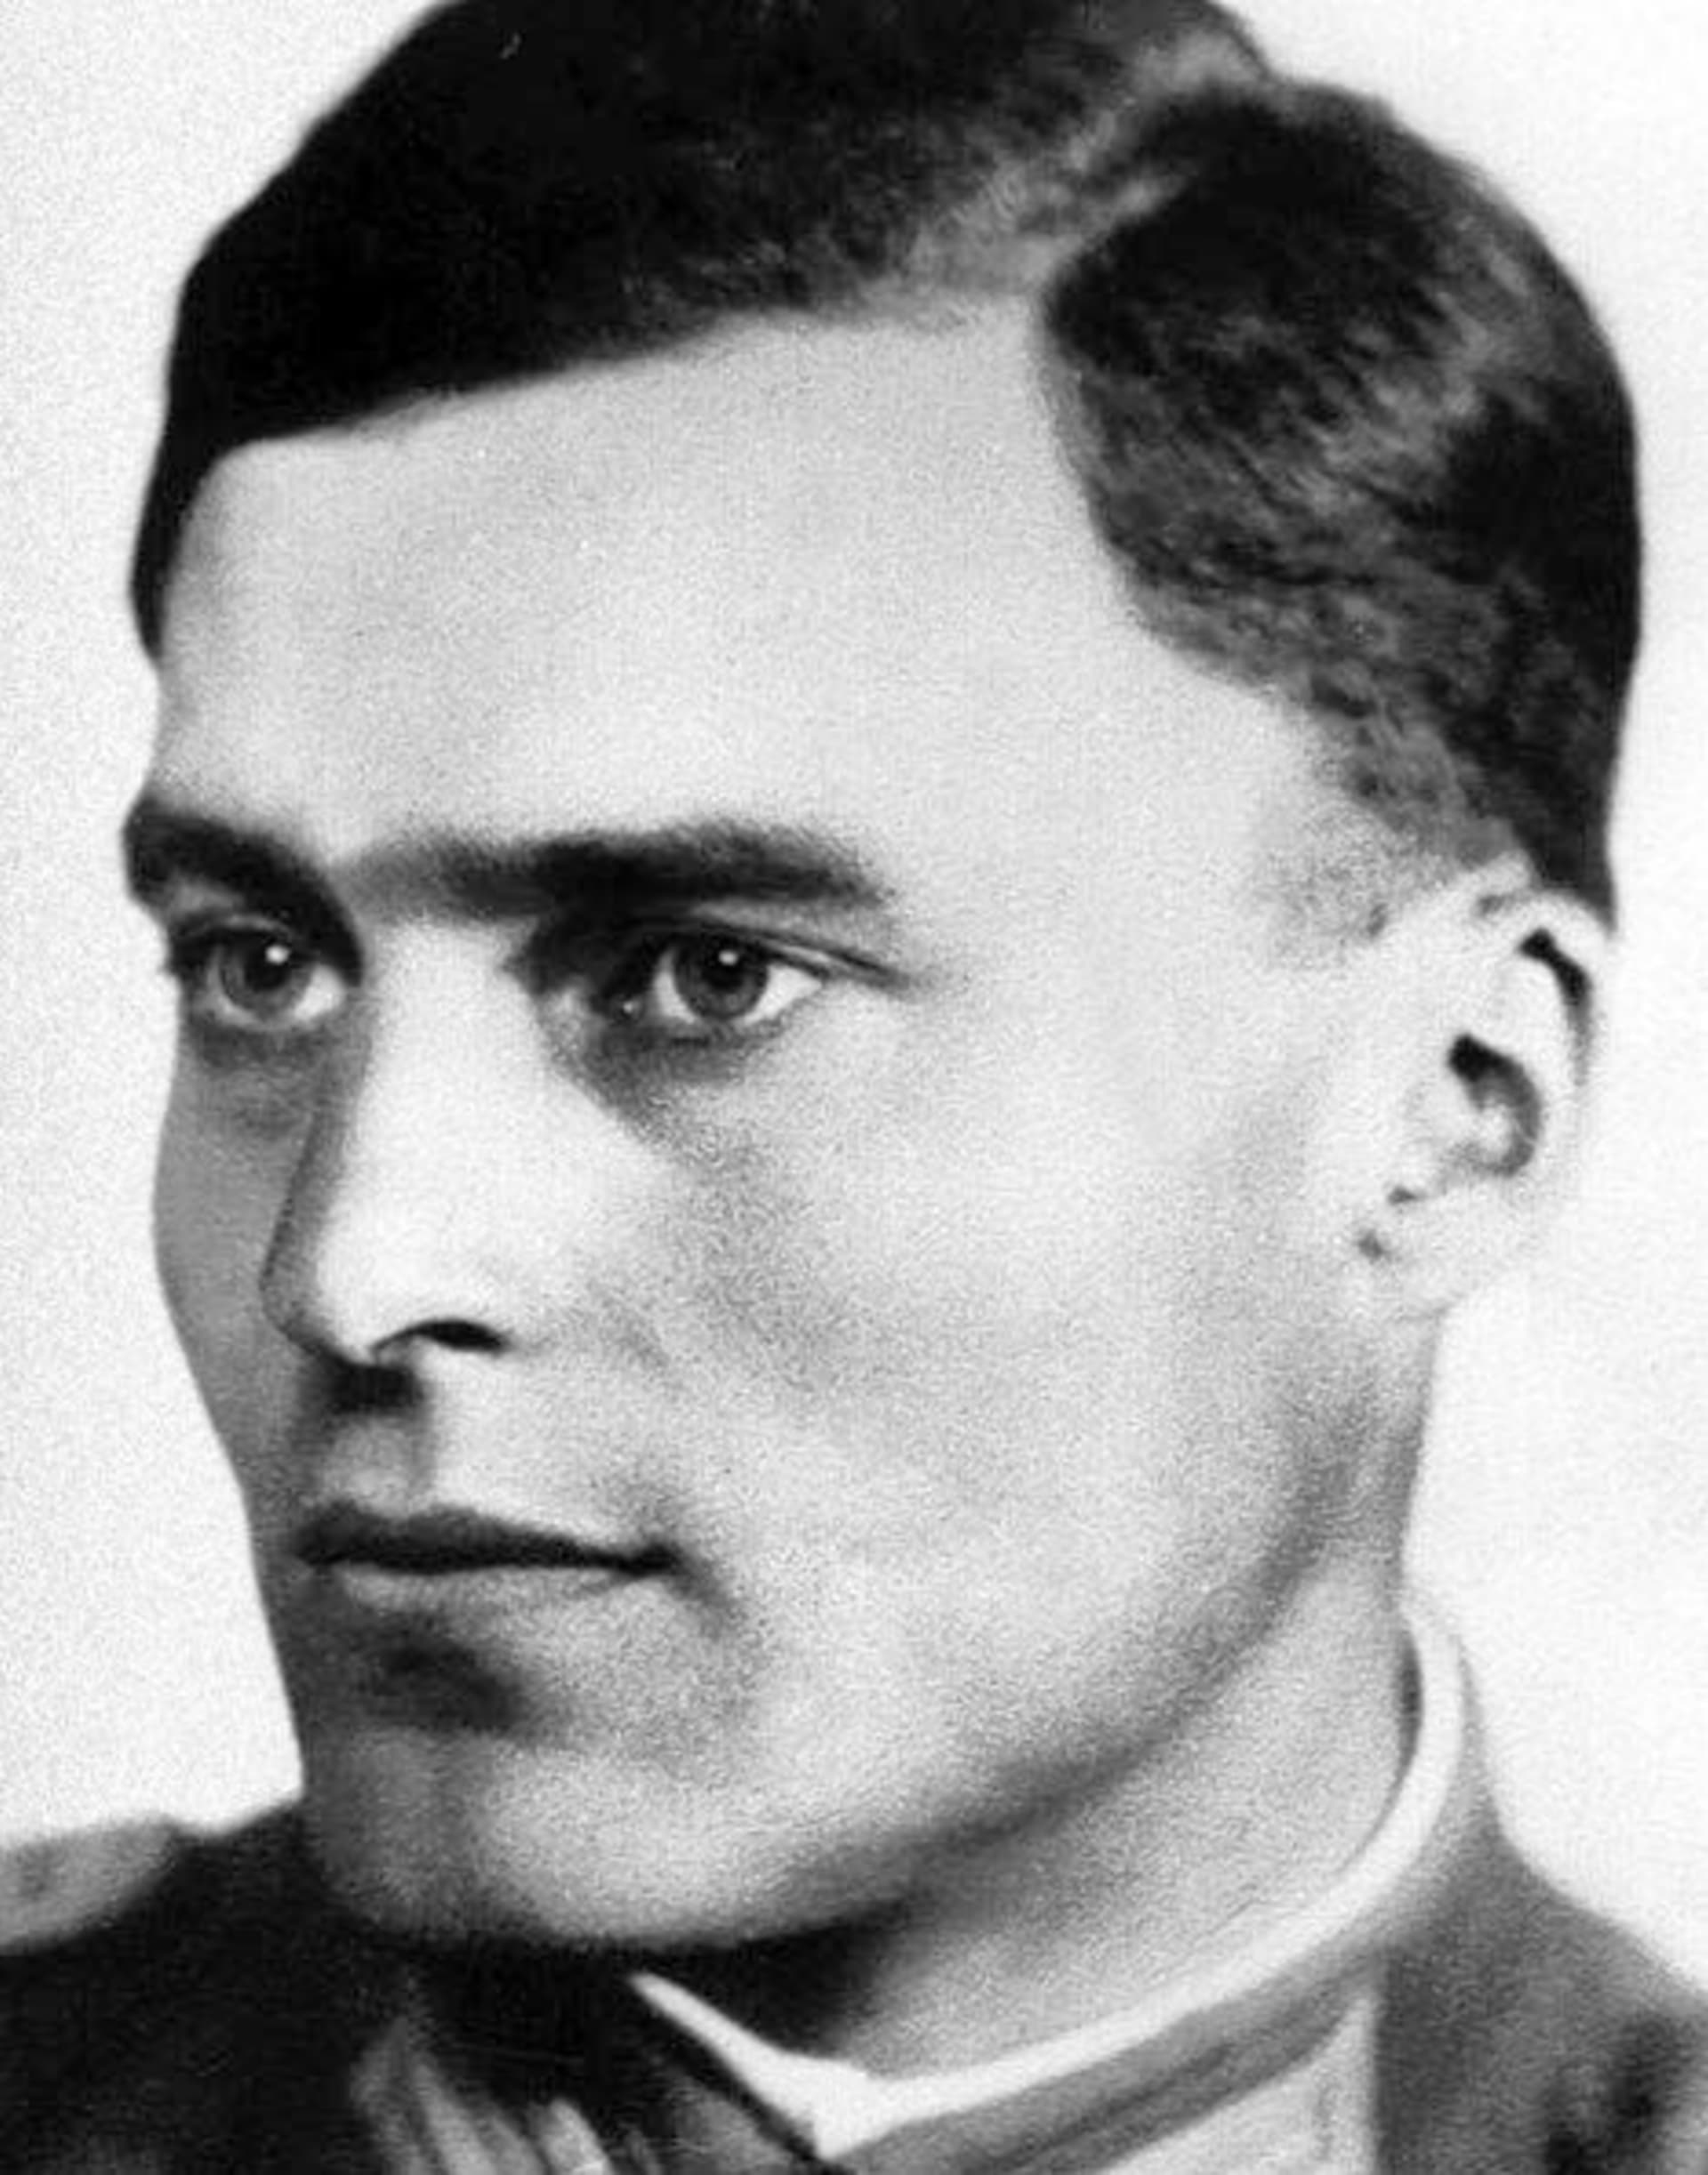 Plukovník Claus Schenk von Stauffenberg